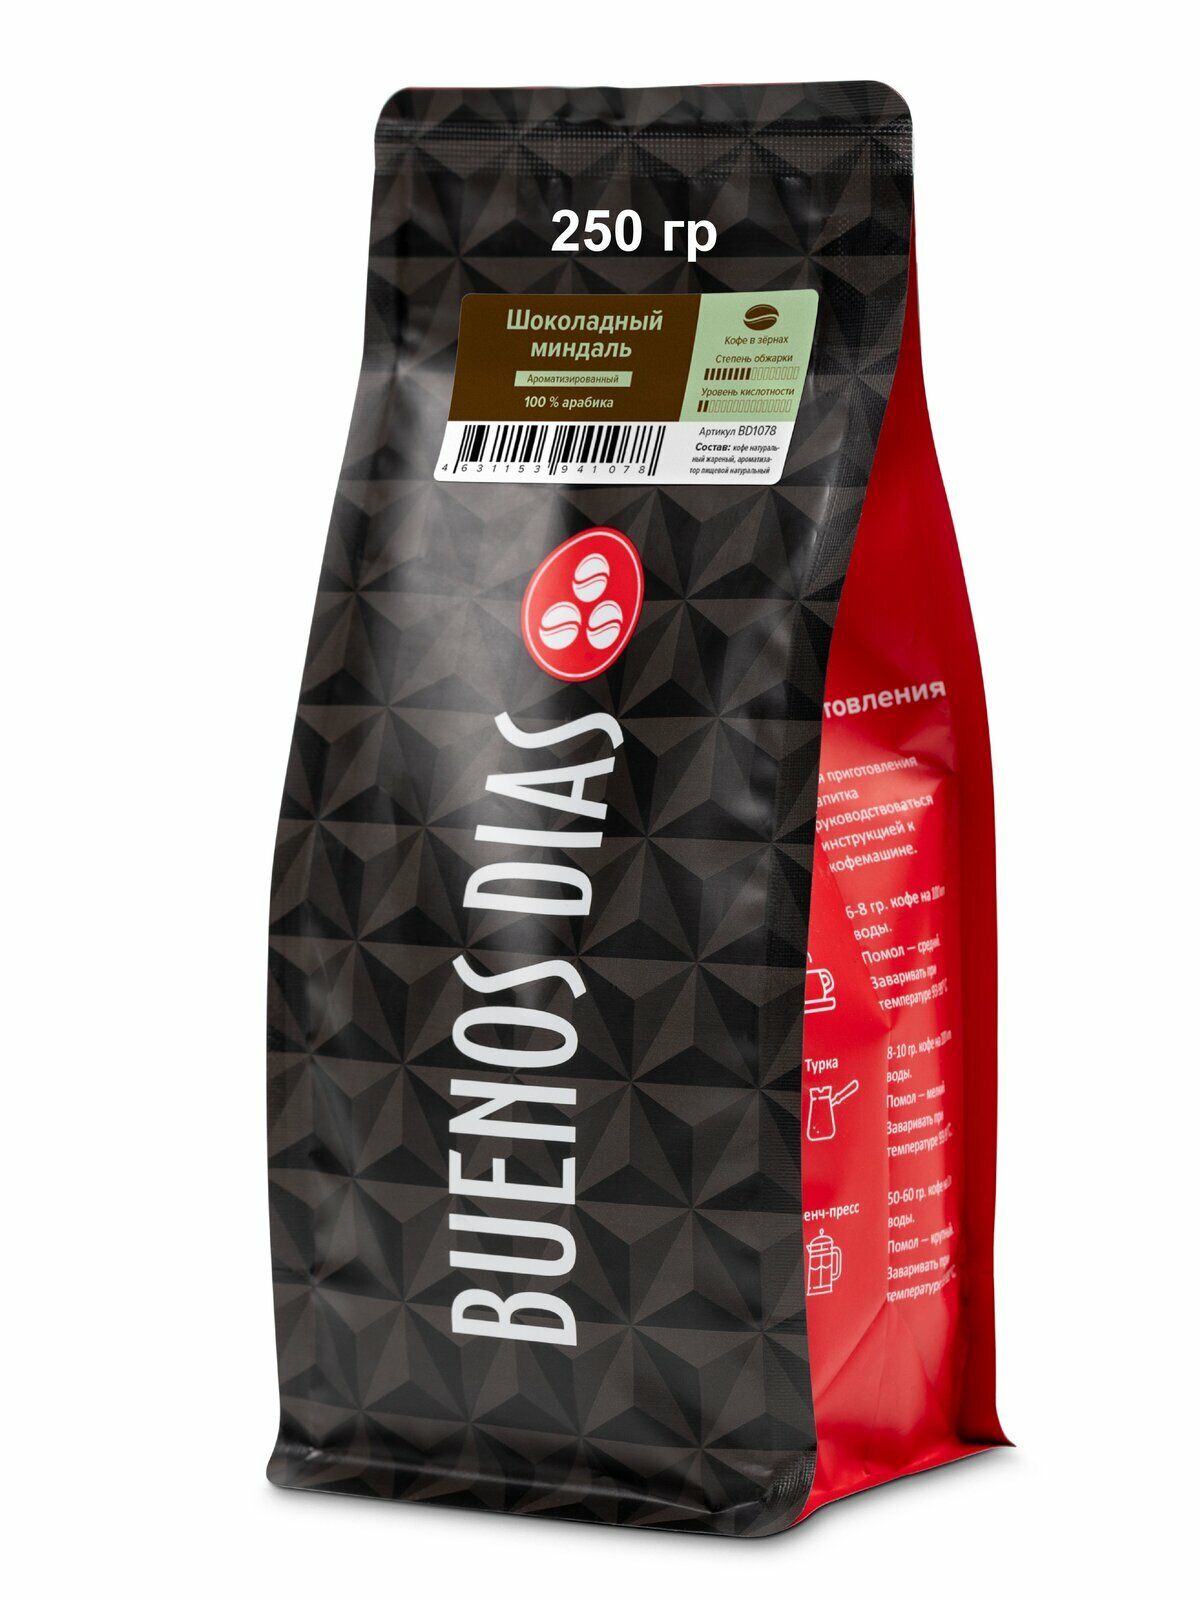 BUENOS DIAS / Кофе Шоколадный миндаль (100% Арабика) в зёрнах ароматизированный, уп. 250 гр